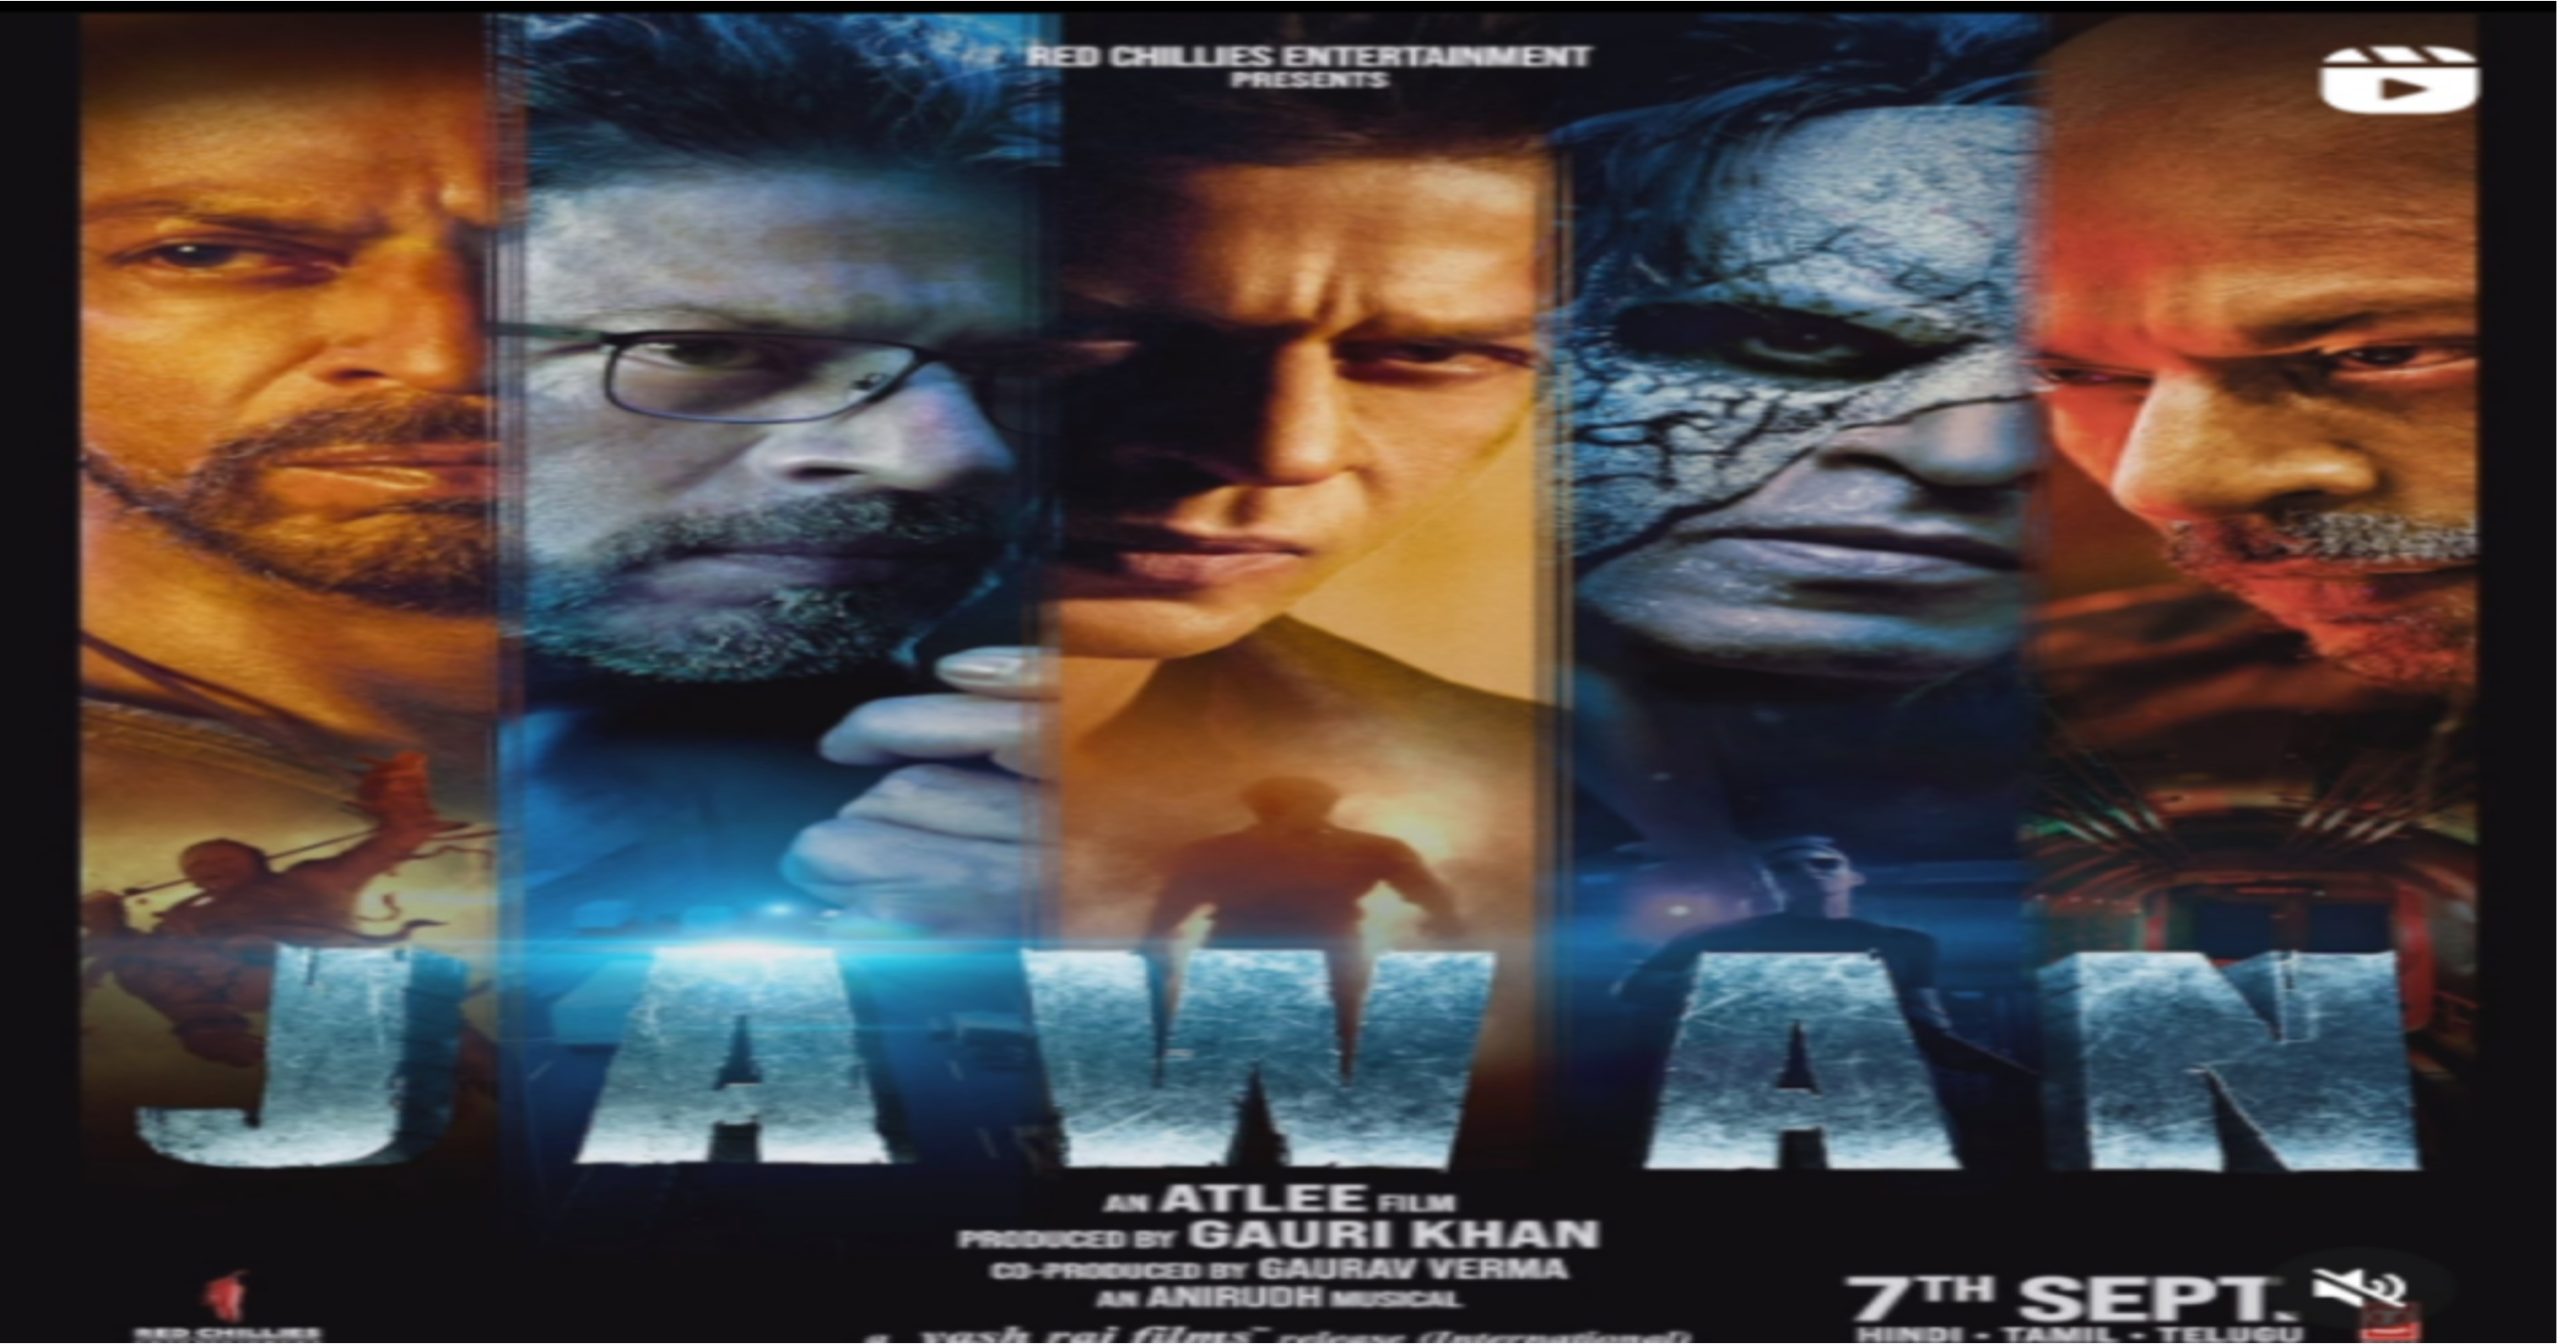 Jawan Advance Booking: शाहरुख खान की फिल्म जवान की एडवांस बुकिंग ने तोड़े सारे रिकॉर्ड, मिनटों में बिके टिकट